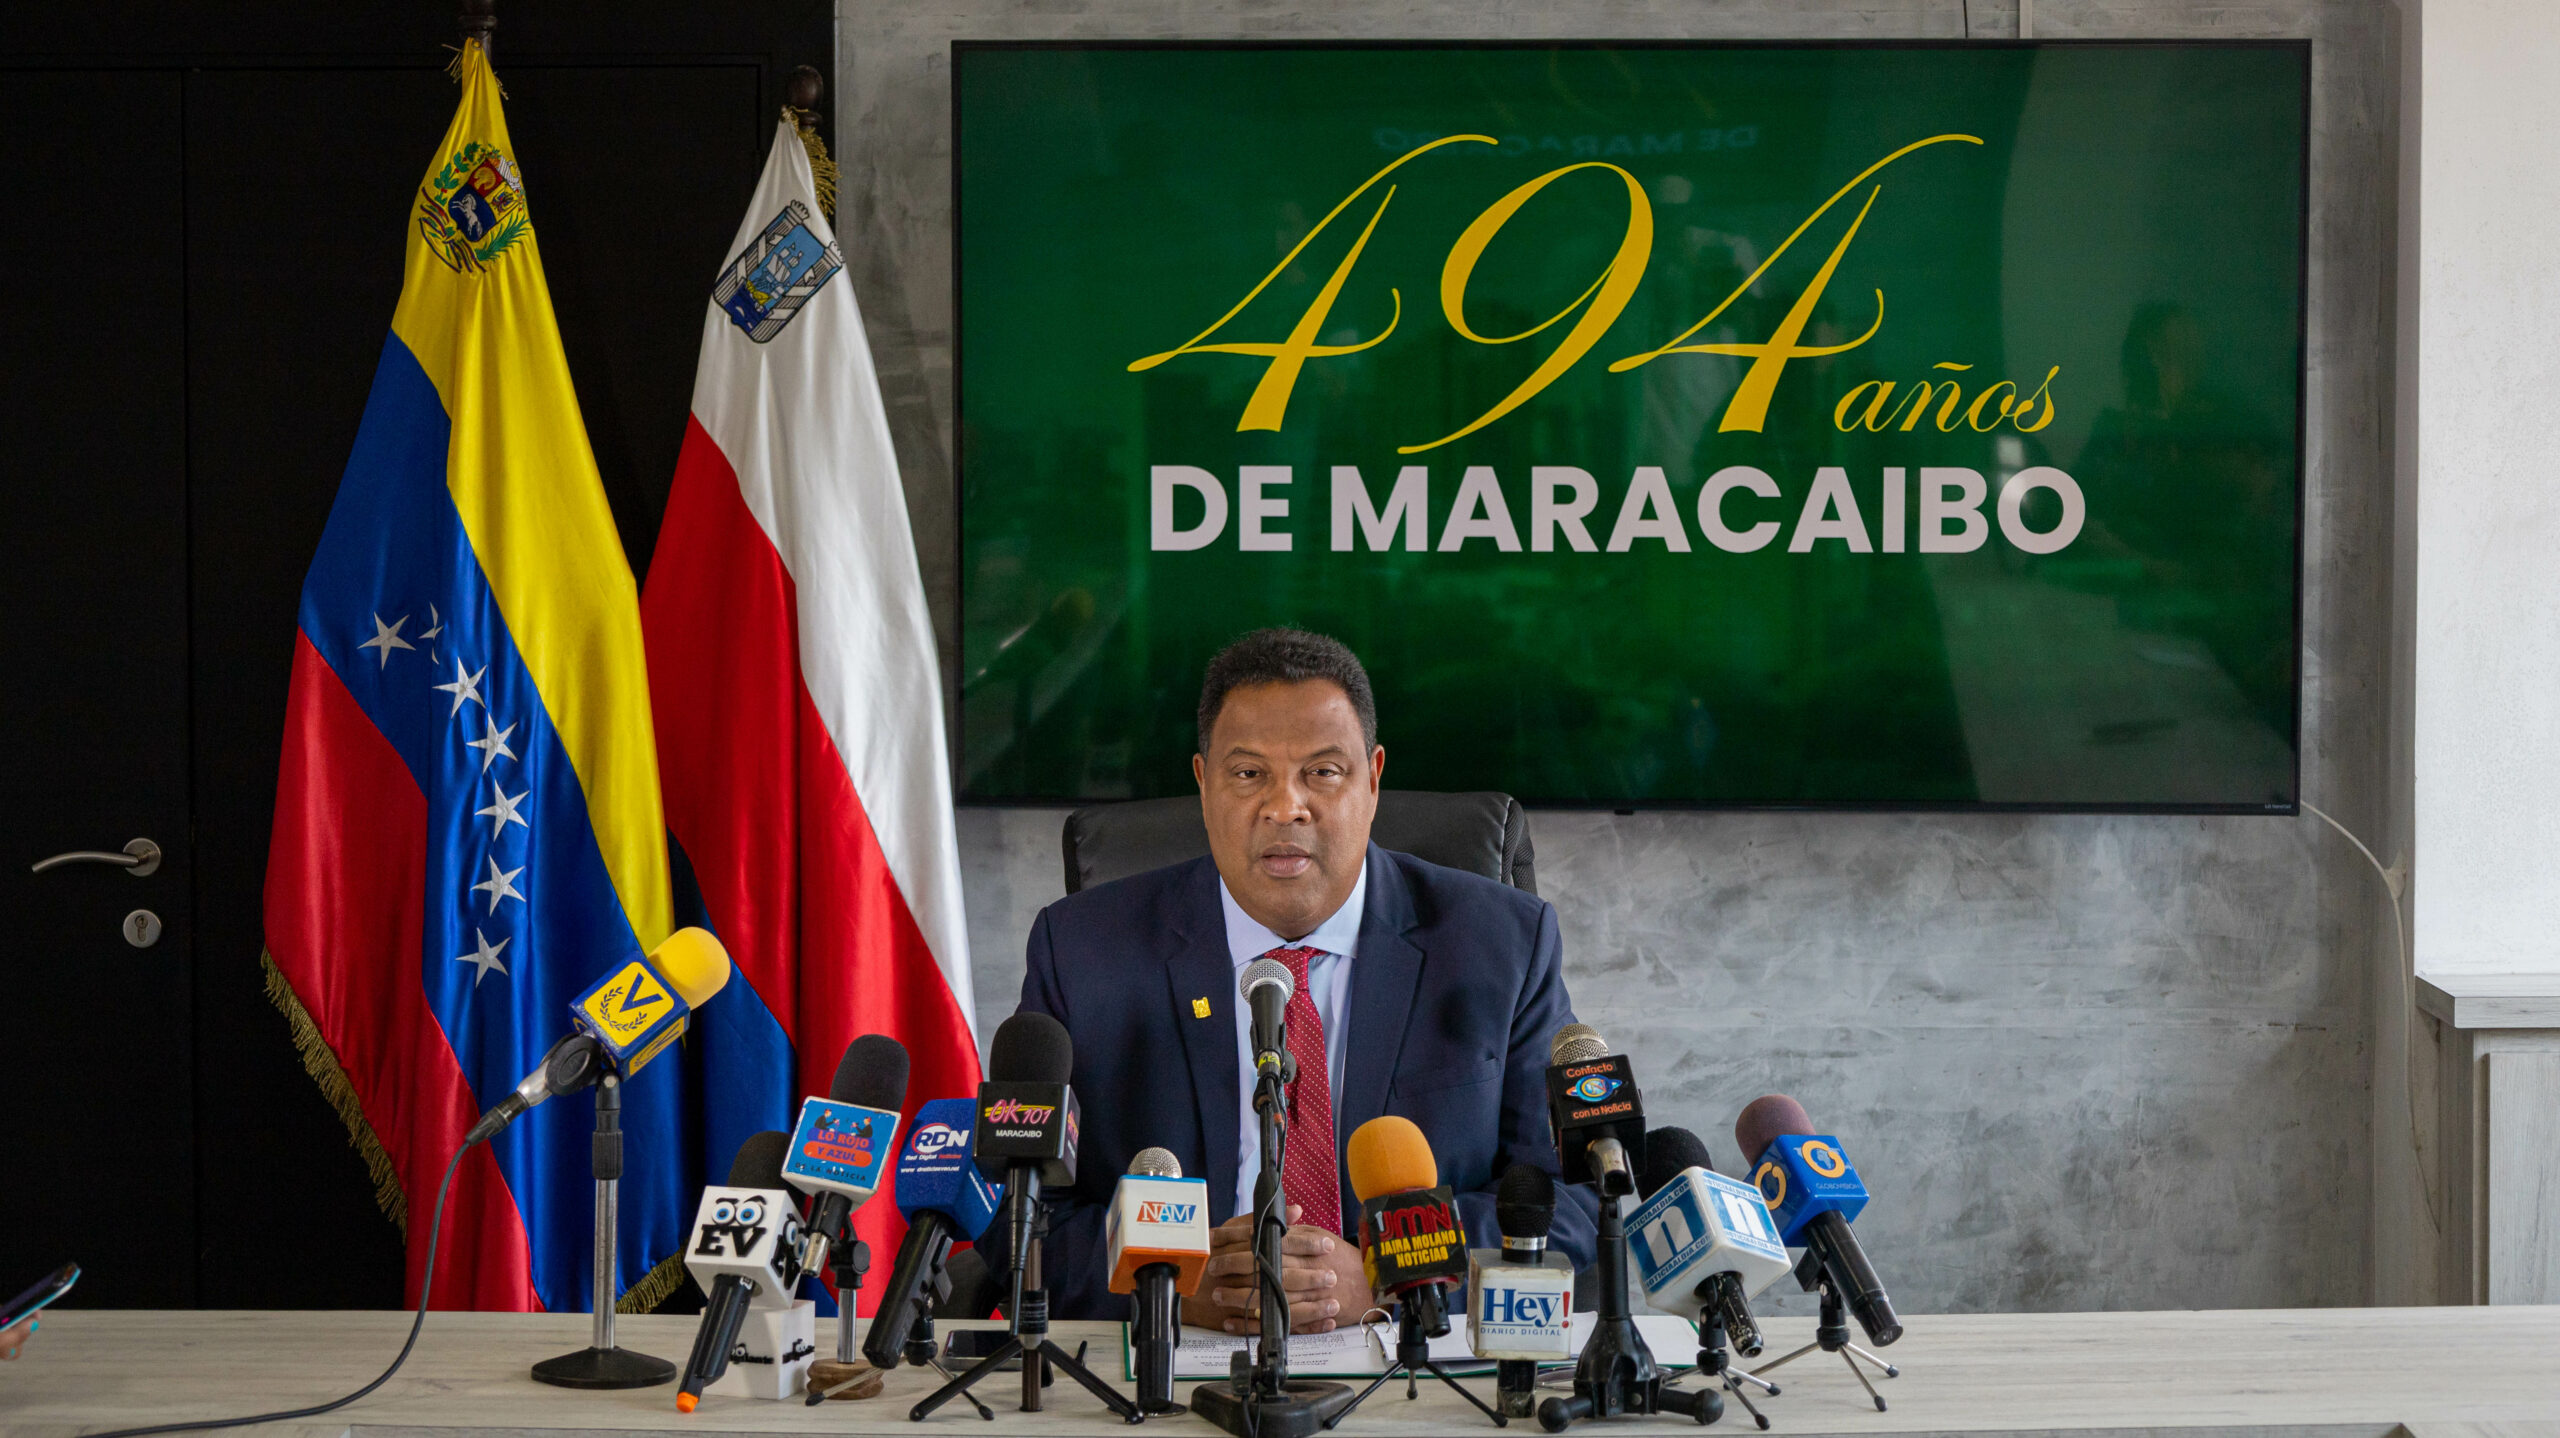 Rafael Ramírez Colina: “Los 494 años de Maracaibo se celebrarán con Trabajo, Reconocimiento e Identidad”